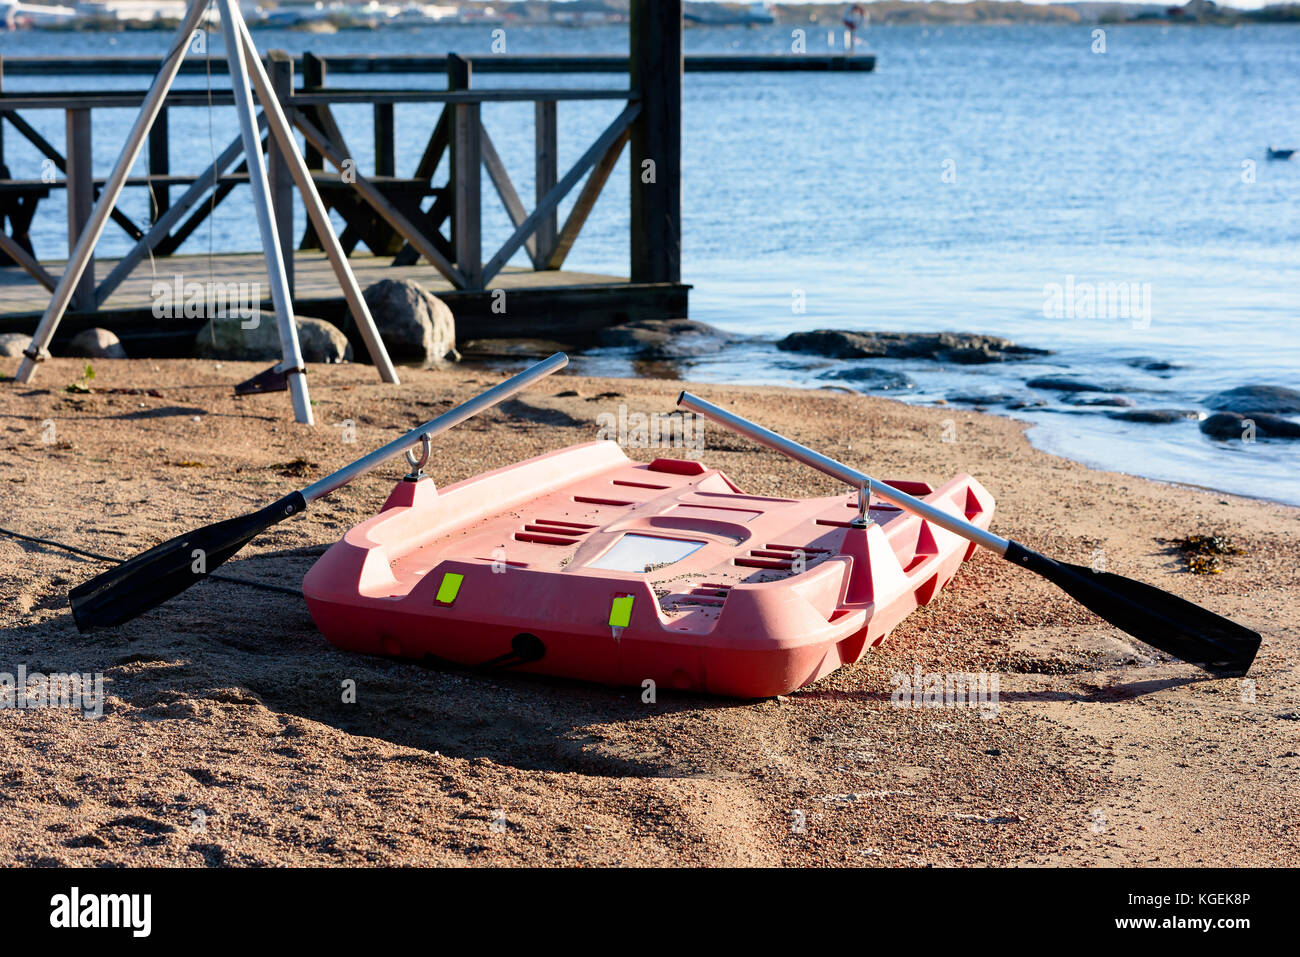 Attrezzature di salvataggio sulla spiaggia di plastica arancione una barca o un gommone con remi pronto per l'uso. Foto Stock